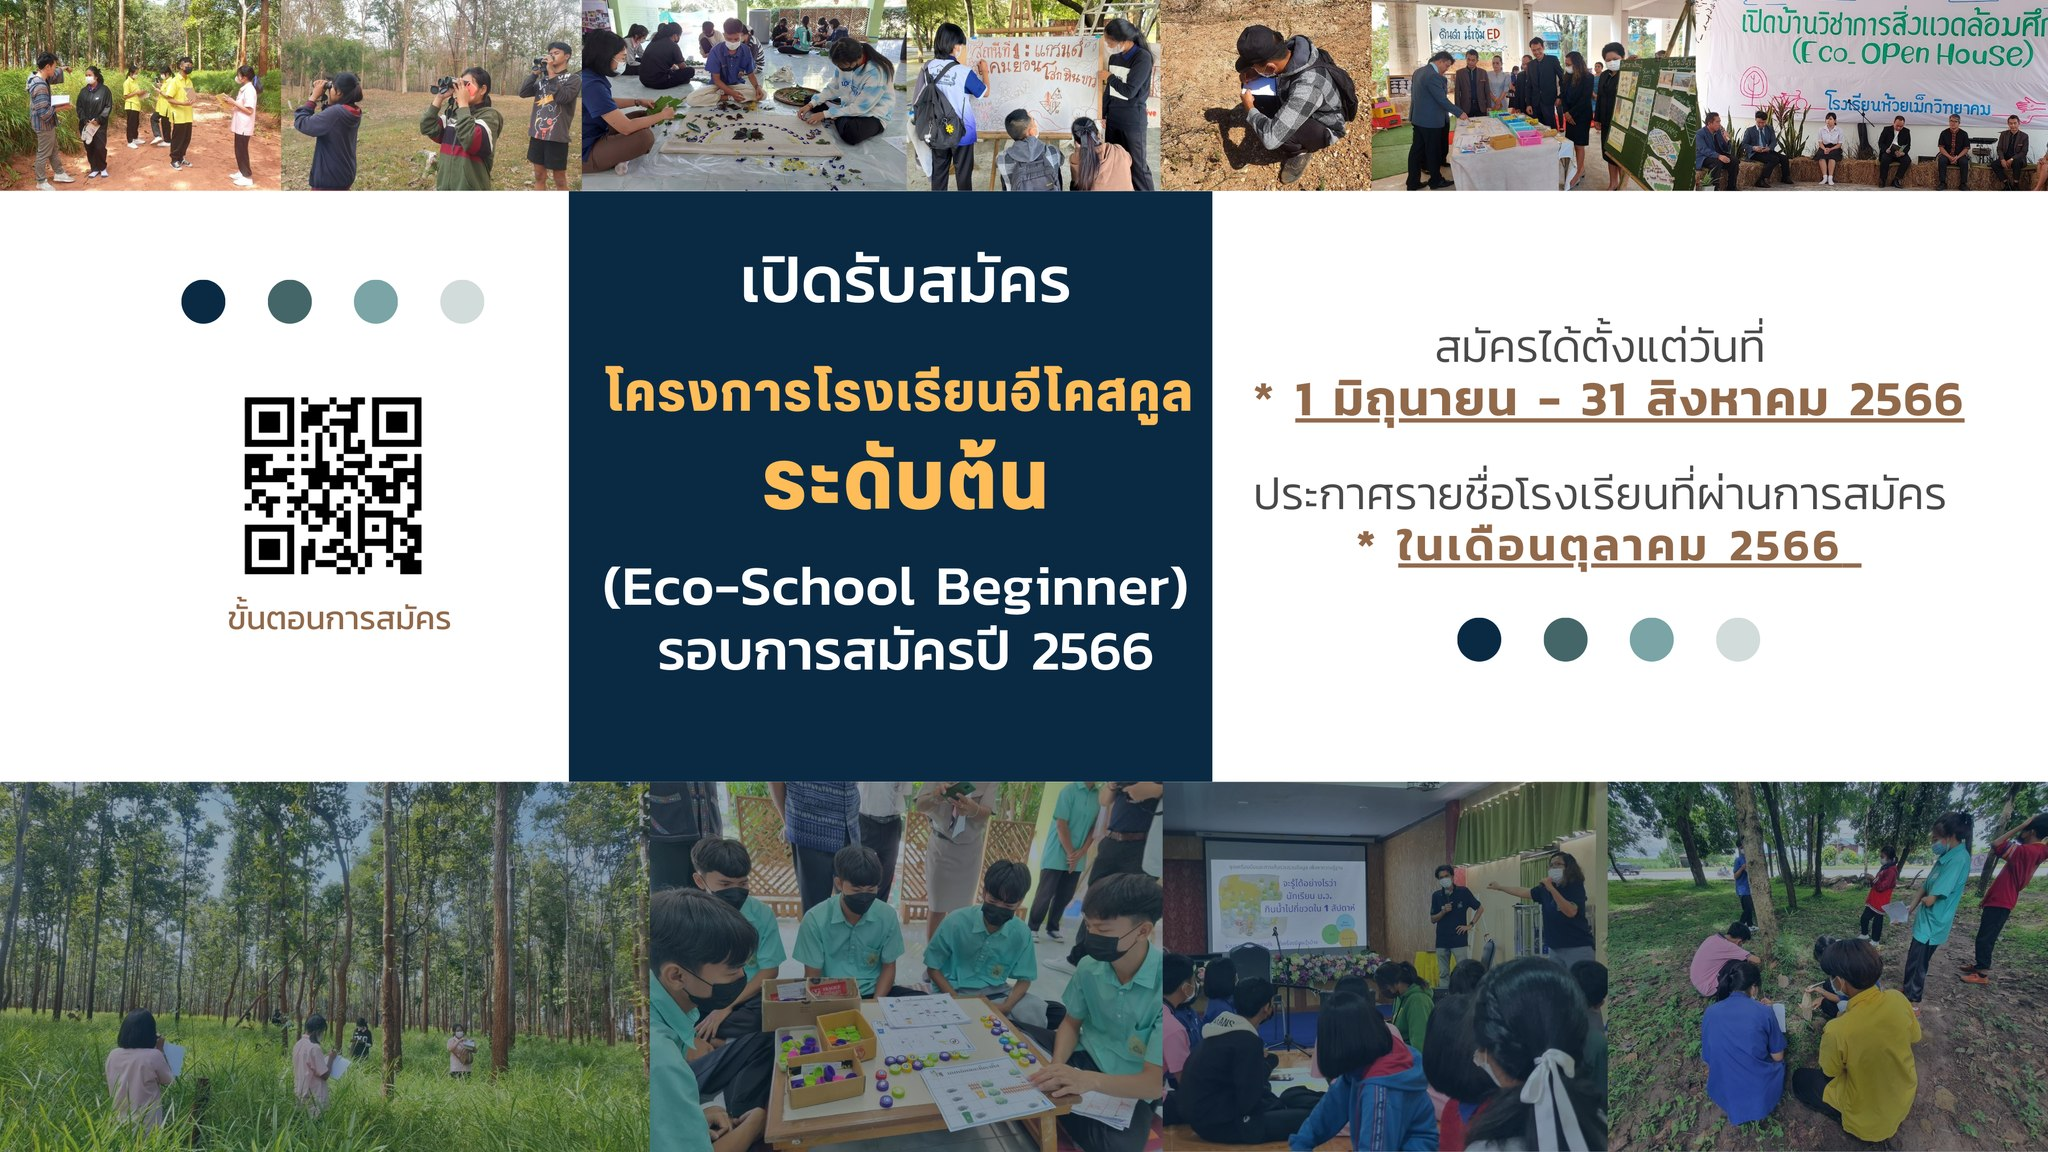 เปิดรับสมัครแล้ว โครงการโรงเรียนอีโคสคูล Eco - School ระดับต้น (รอบการสมัครปี 2566 วันที่ 1 มิถุนายน - 31 สิงหาคม 2566)